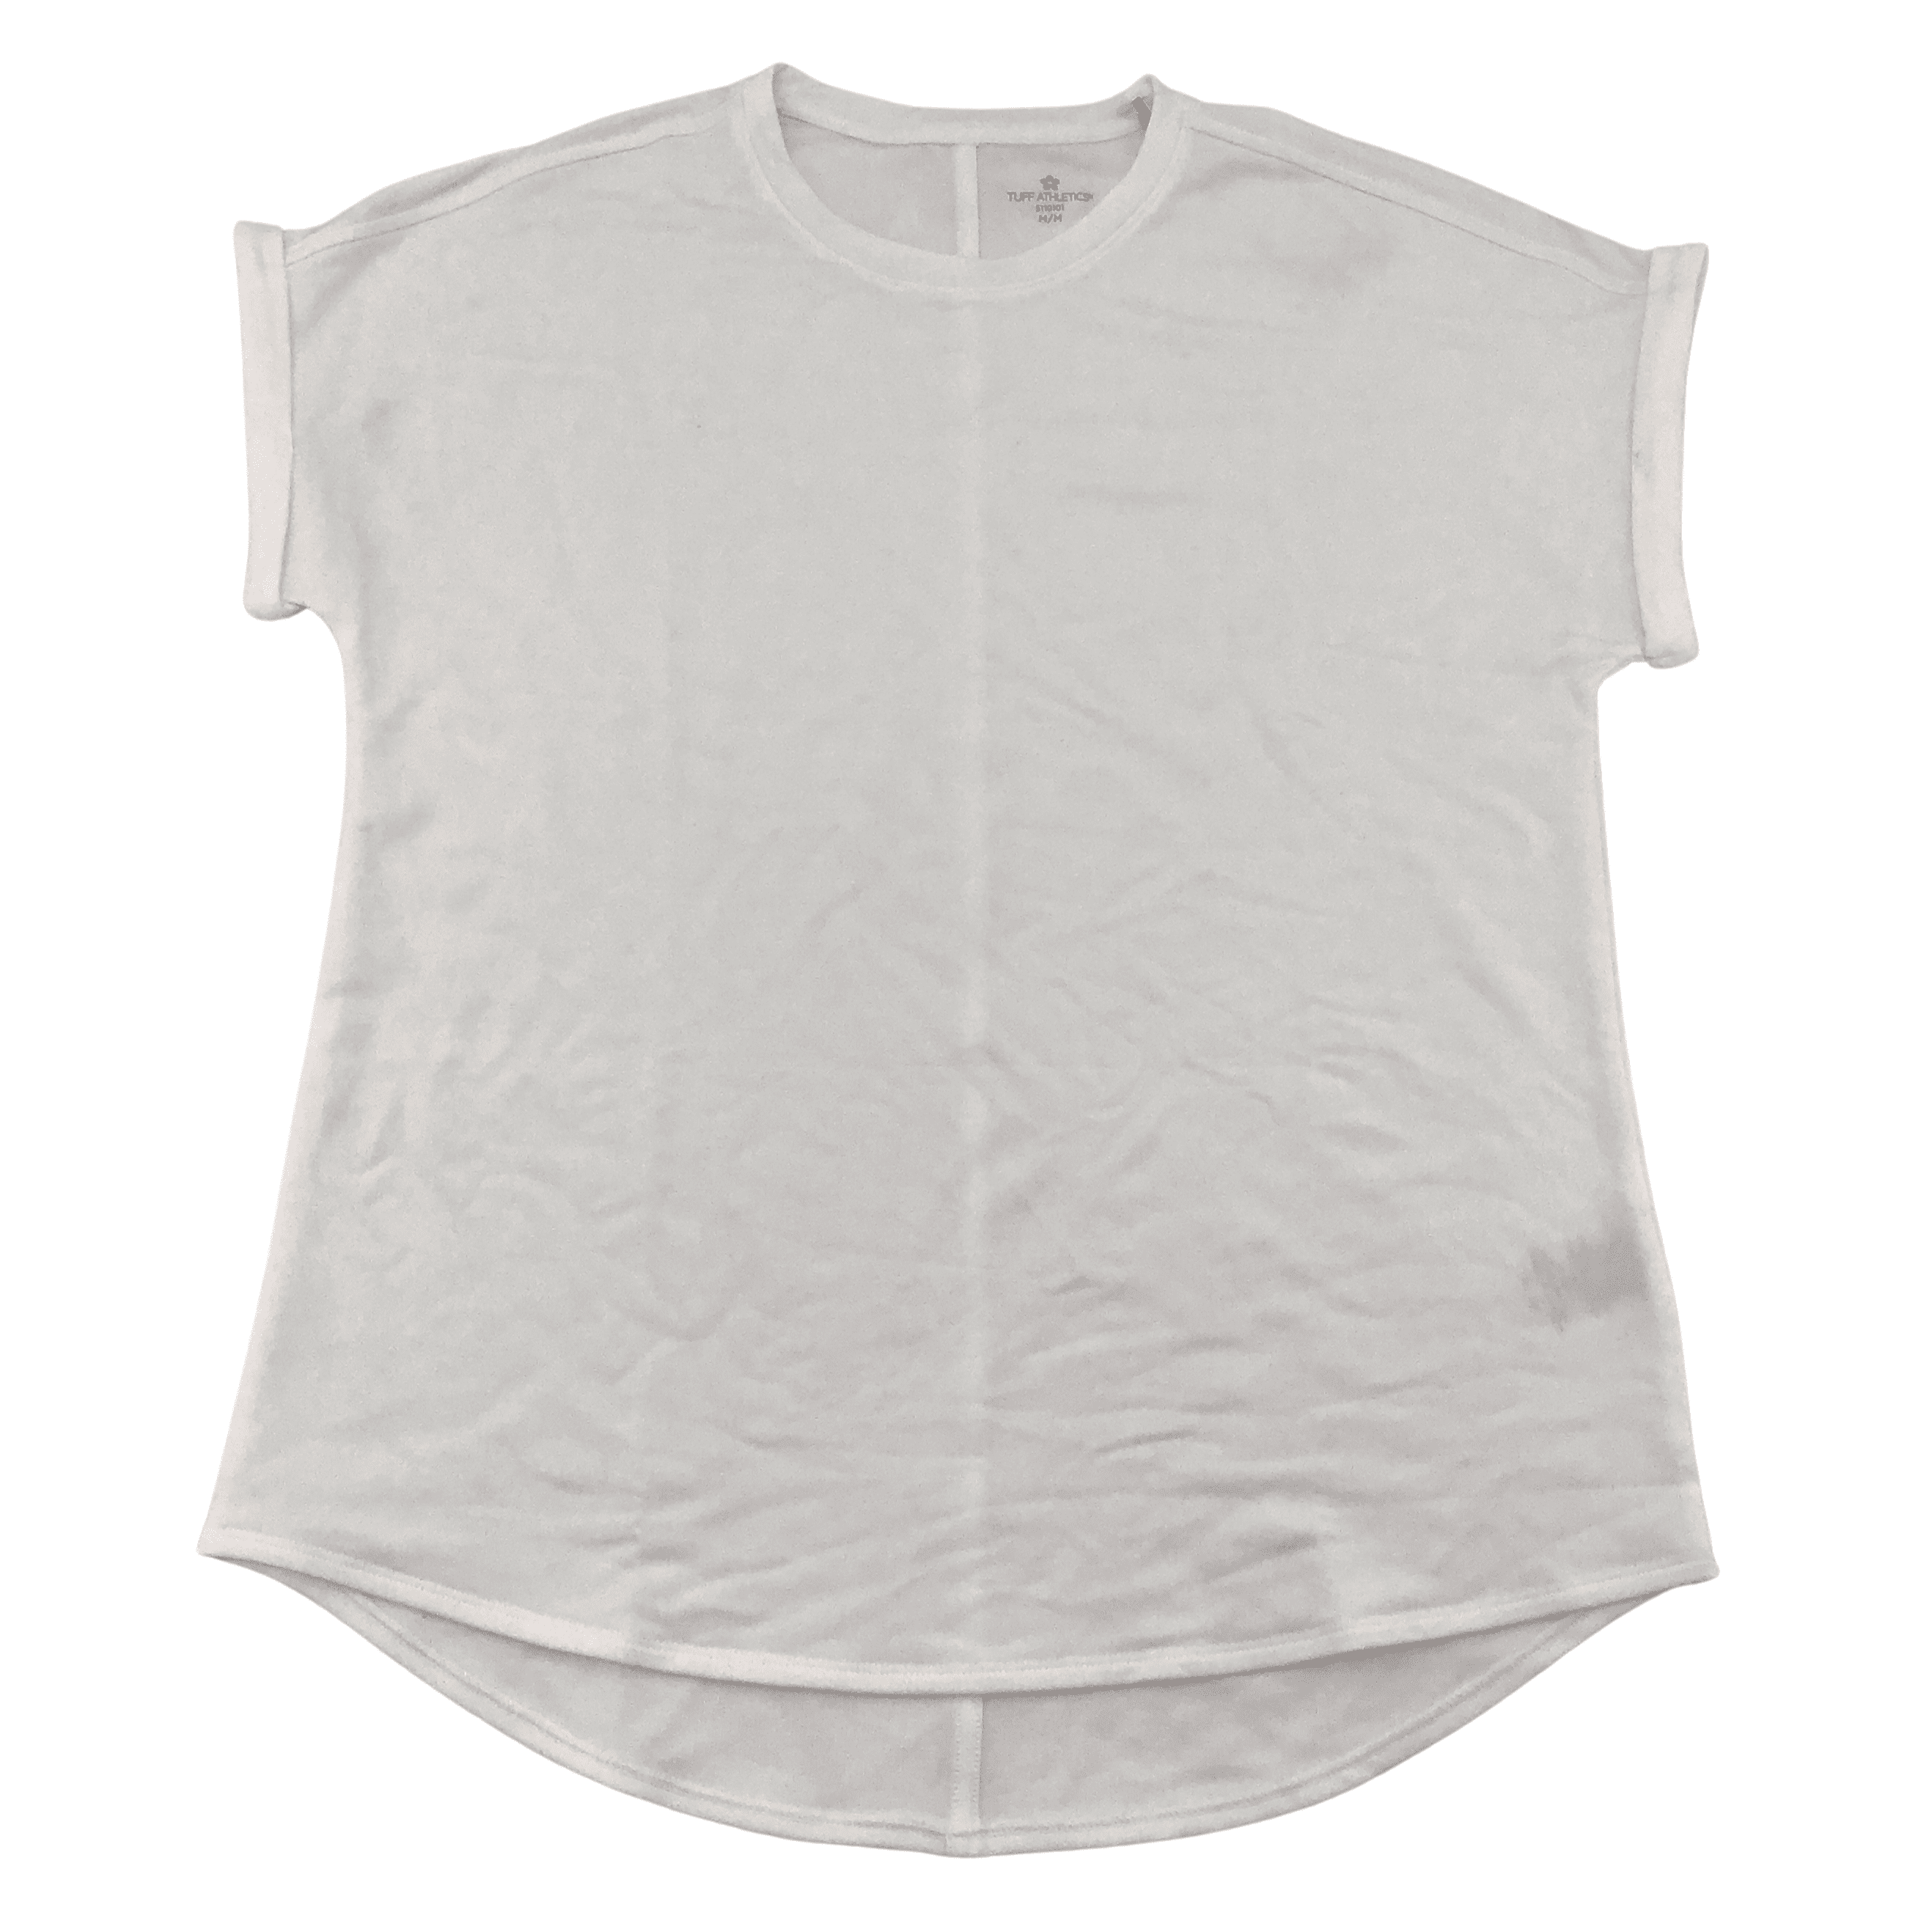 Tuff Athletics Women's Off White T-Shirt / Various Sizes